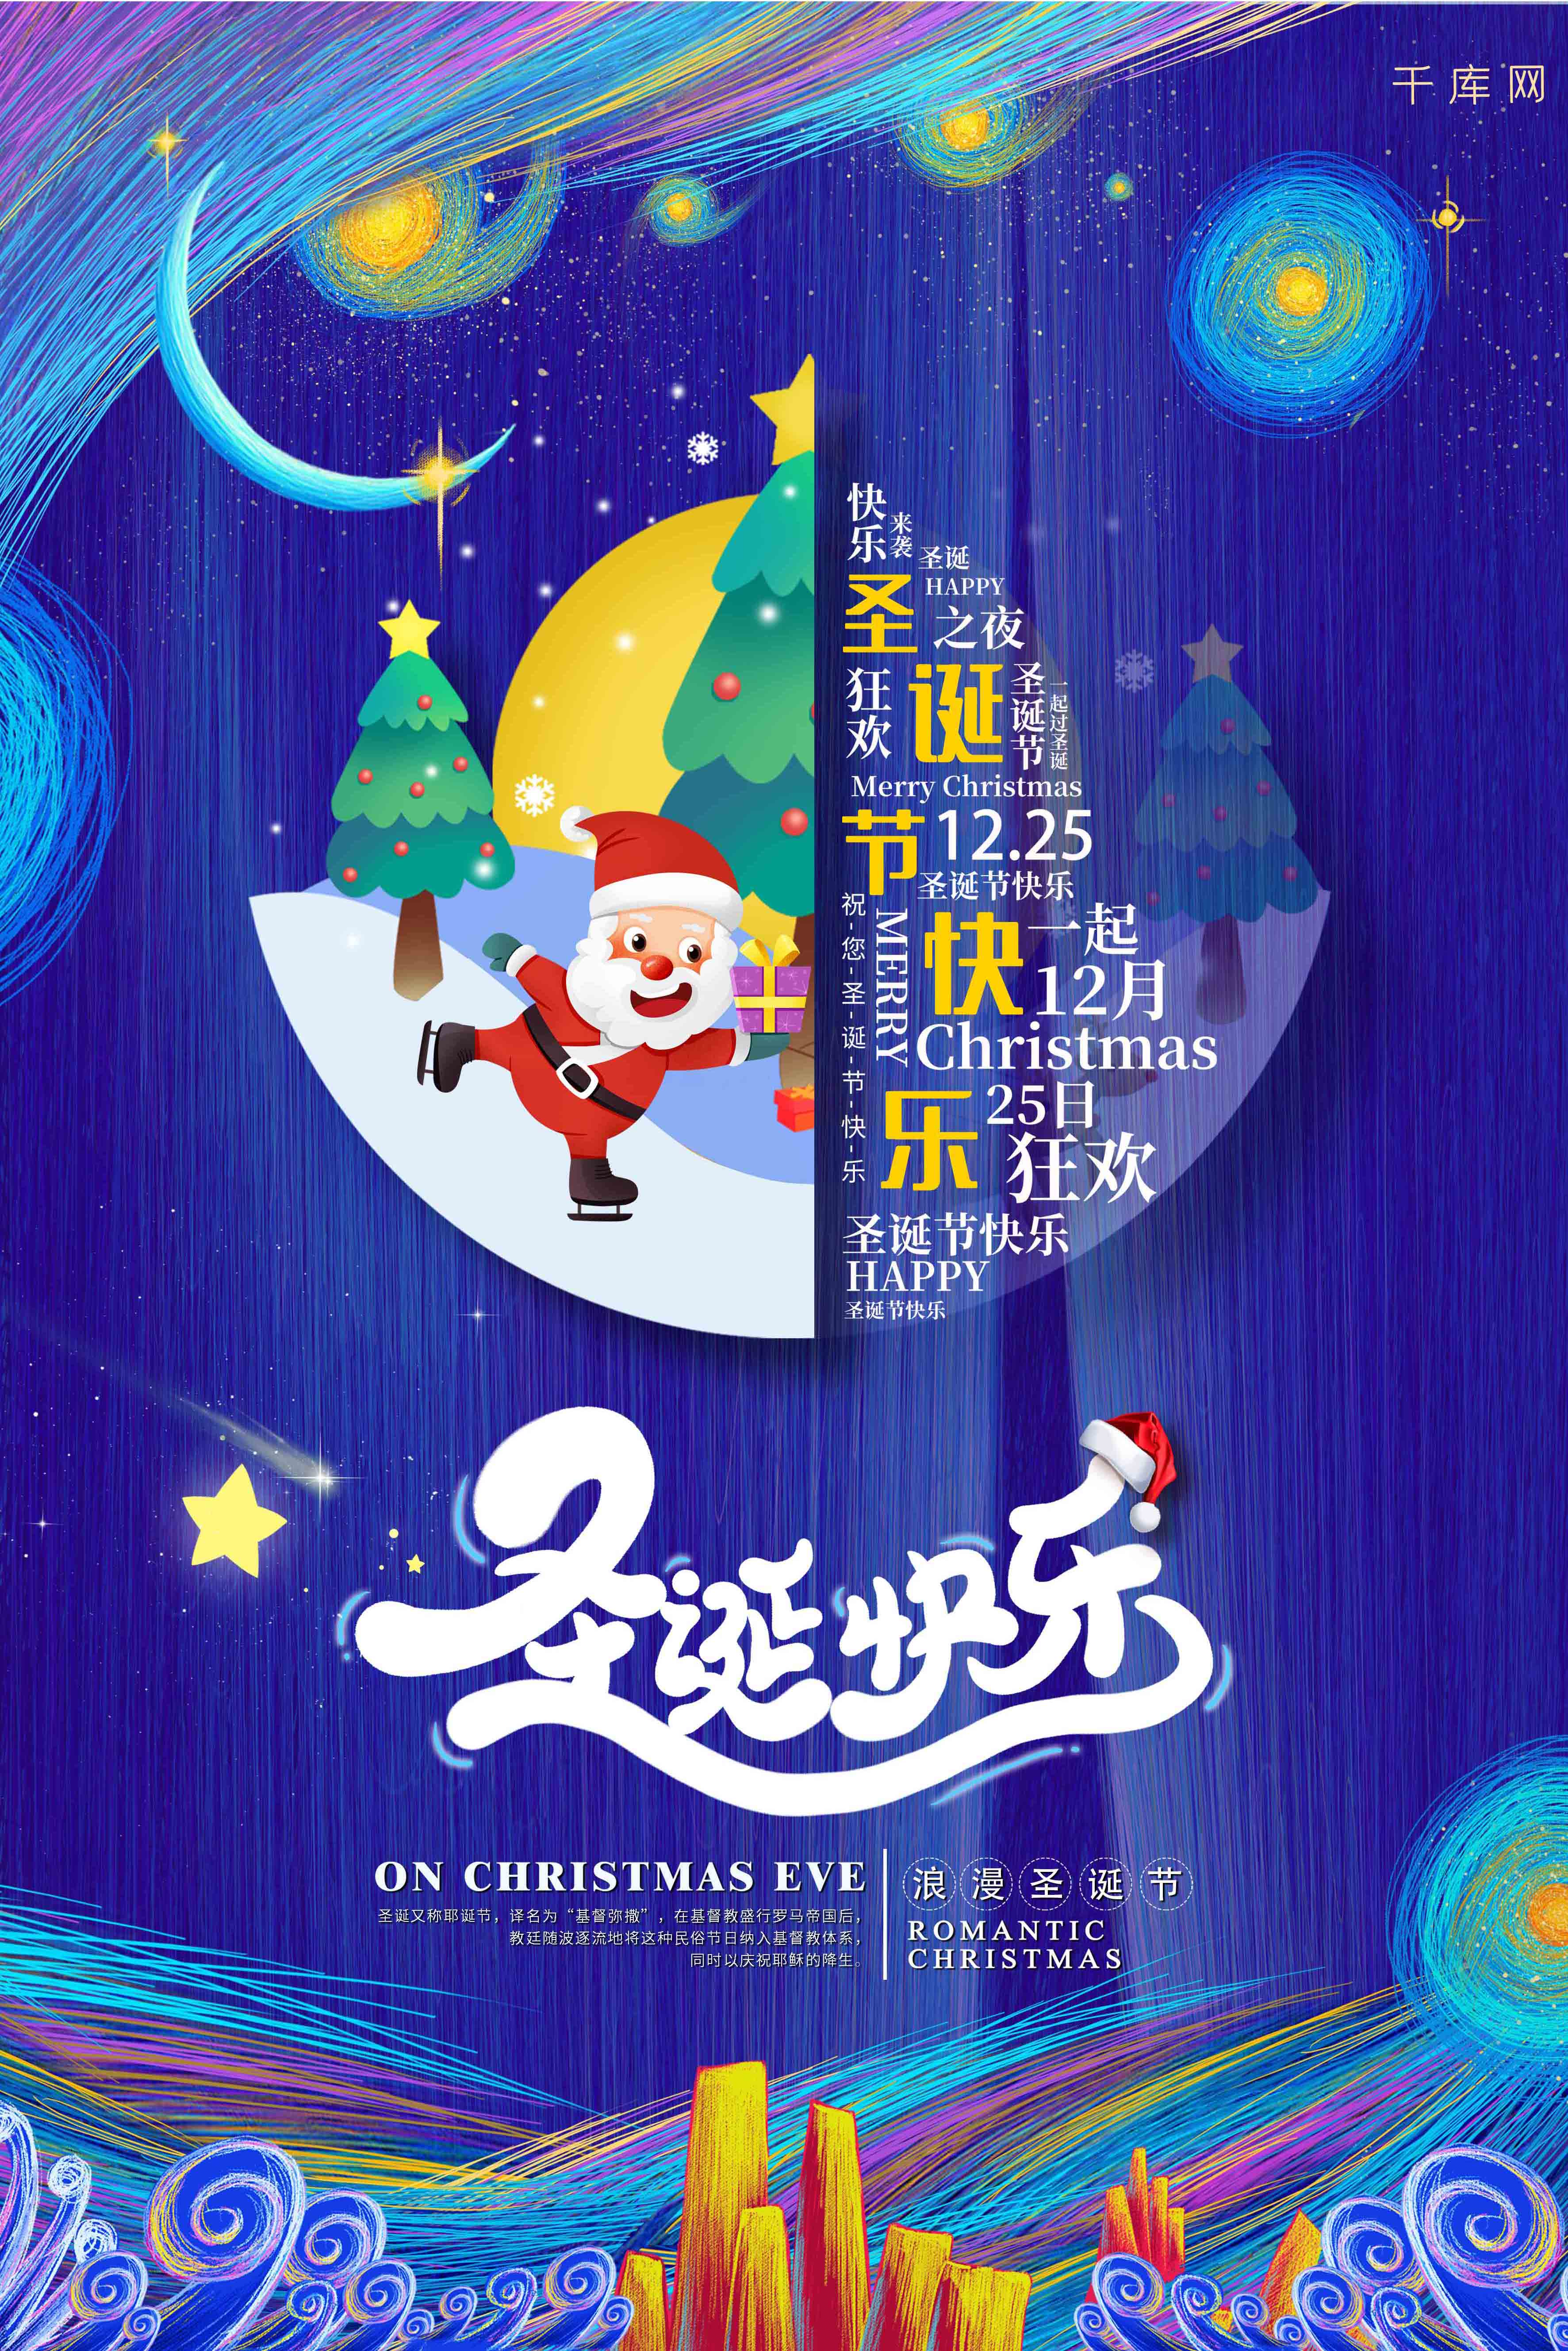 蓝色创意梦幻流线星空背景圣诞节快乐海报图片